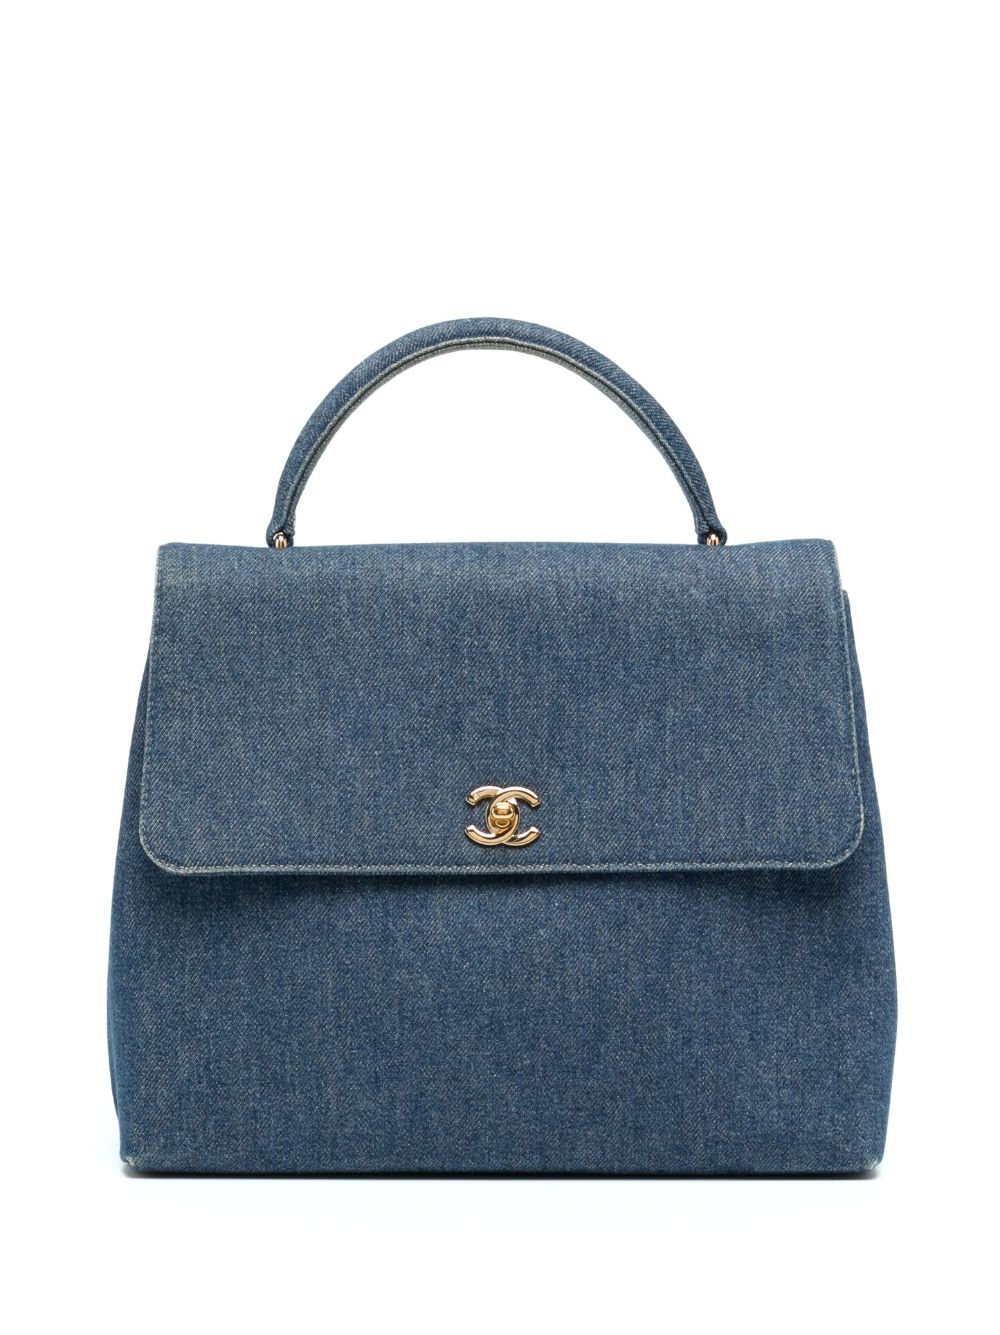 Pre-owned Chanel 1998 Cc Turn-lock Denim Flap Handbag In Blue